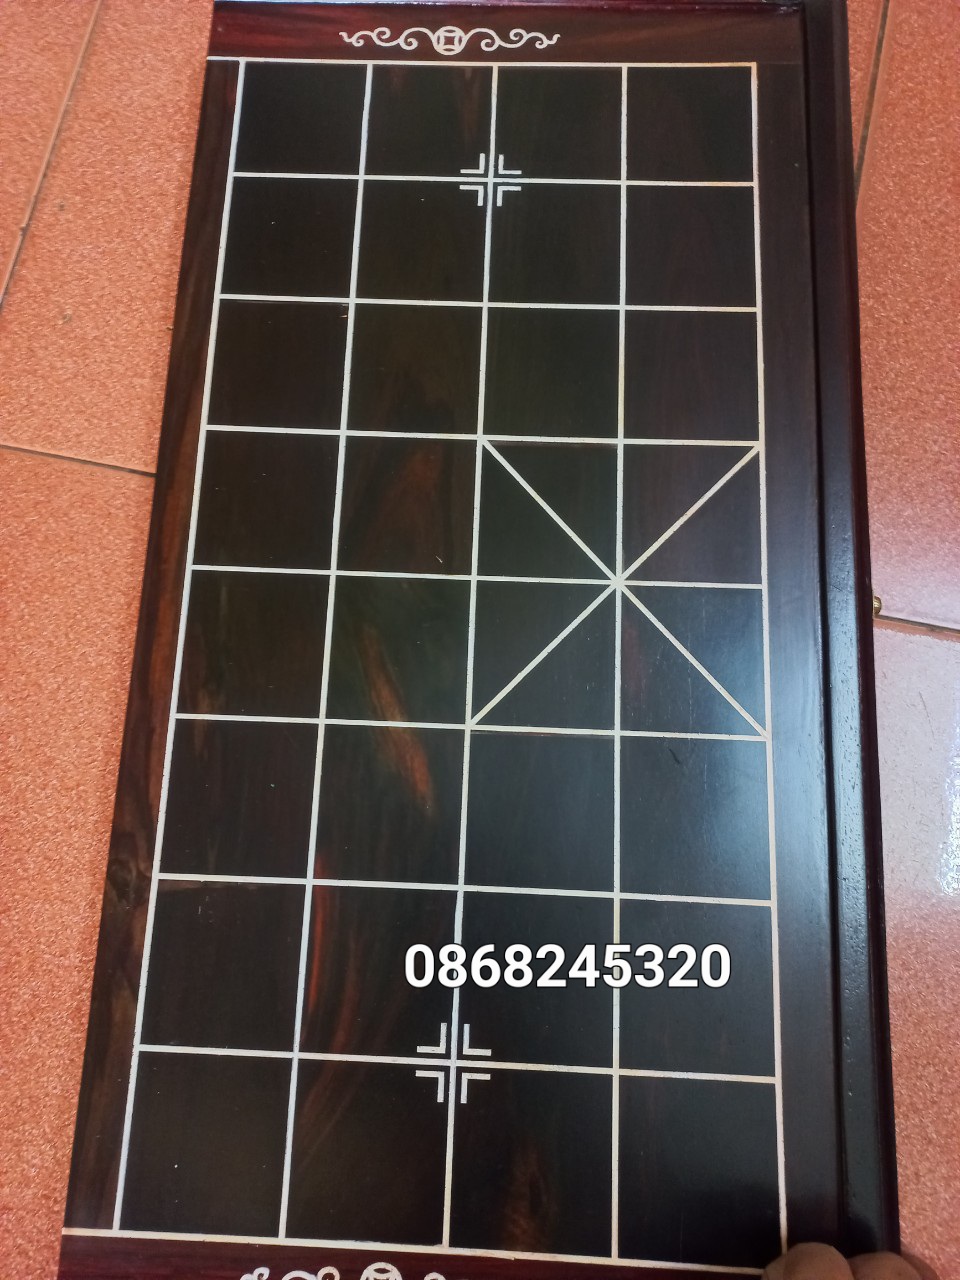 Bộ bàn cờ tướng gỗ trắc bàn kt 60×60×3.5cm +quân cờ gỗ trắc kt 4.5×1.6cm